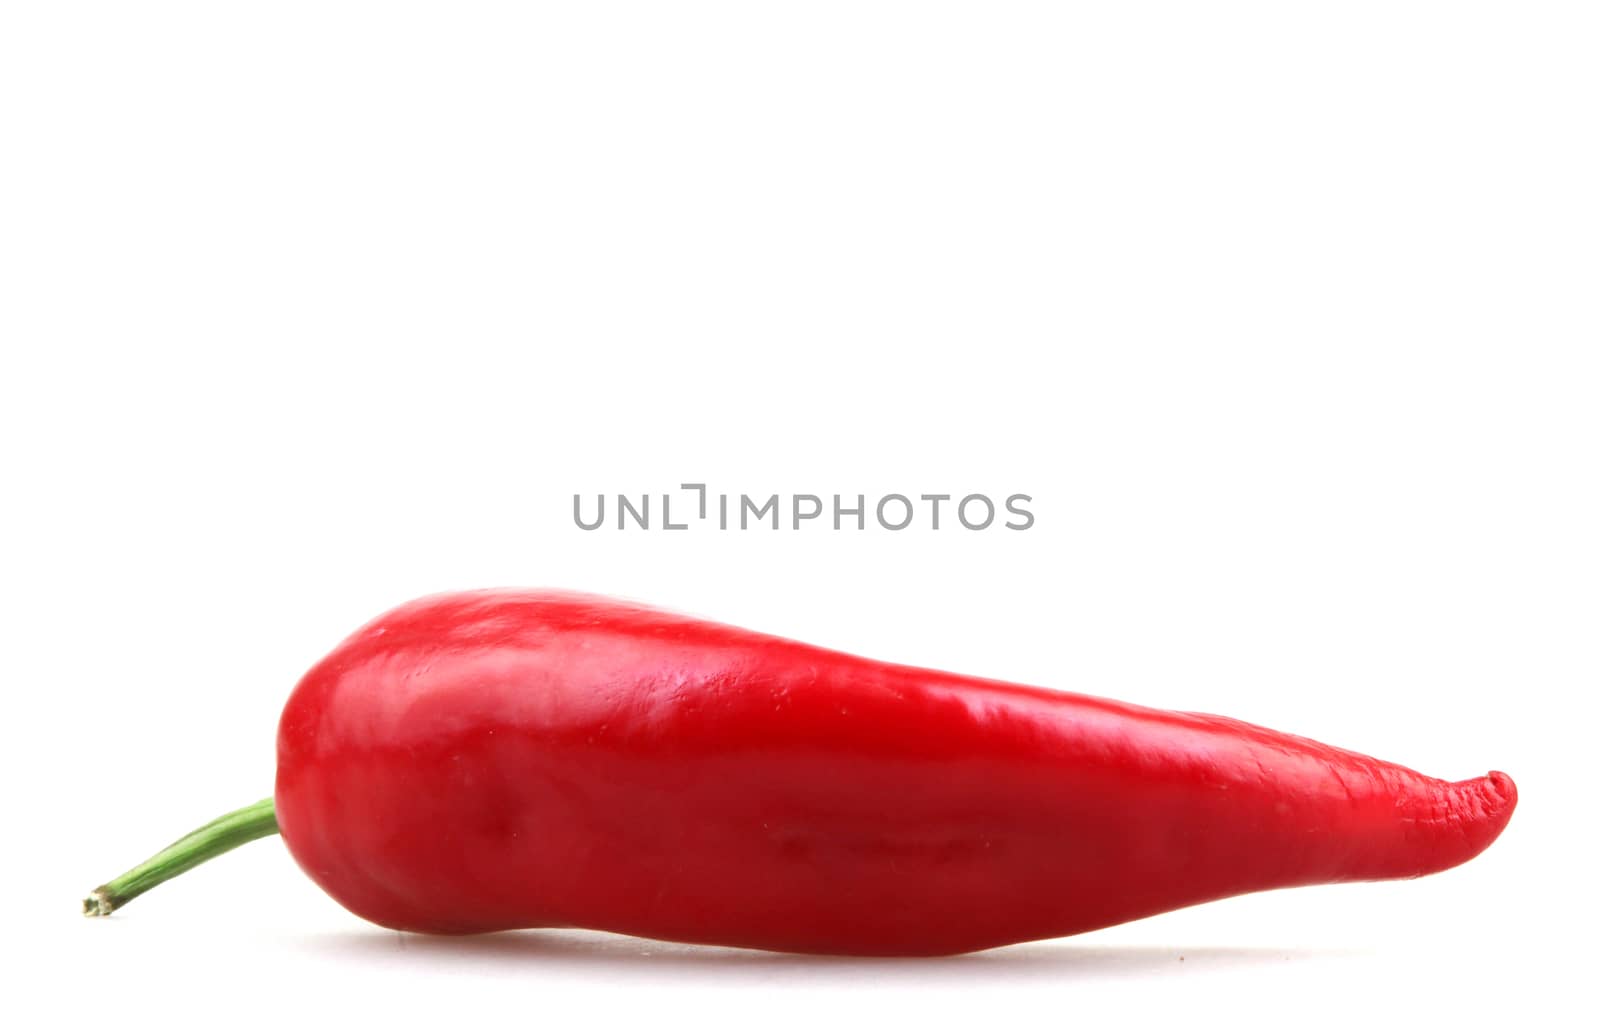 Red Pepper by nenov